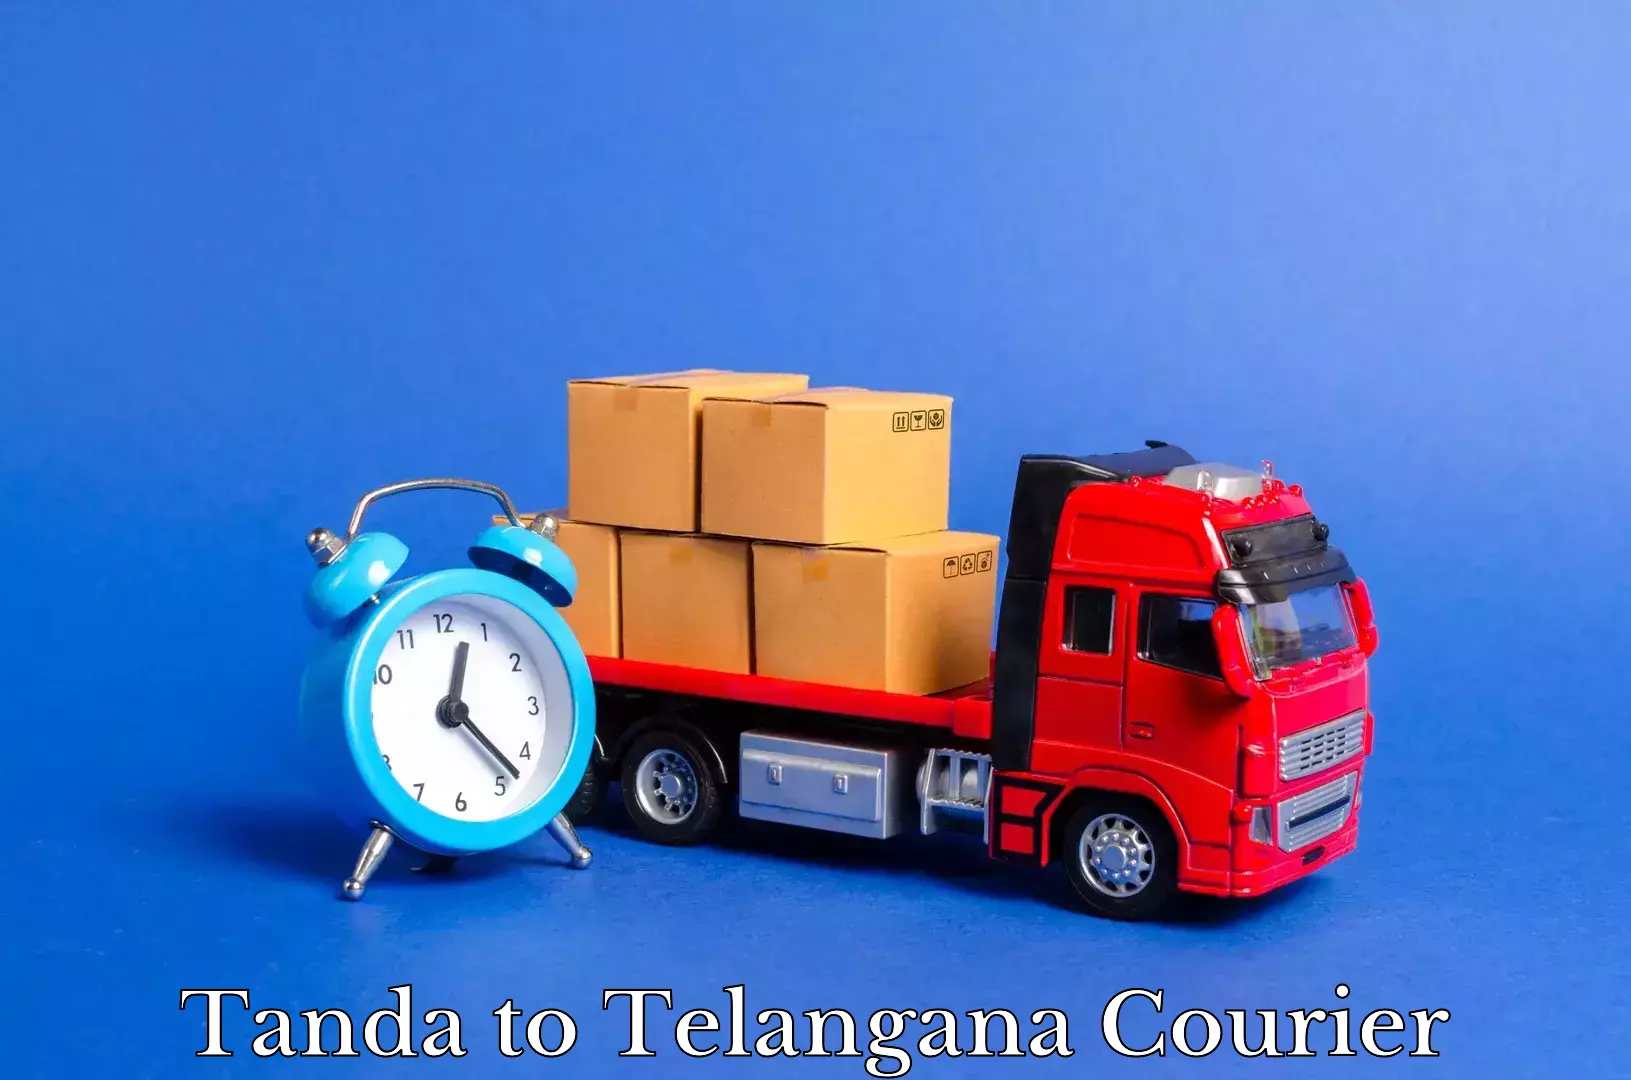 Reliable movers Tanda to Nirmal